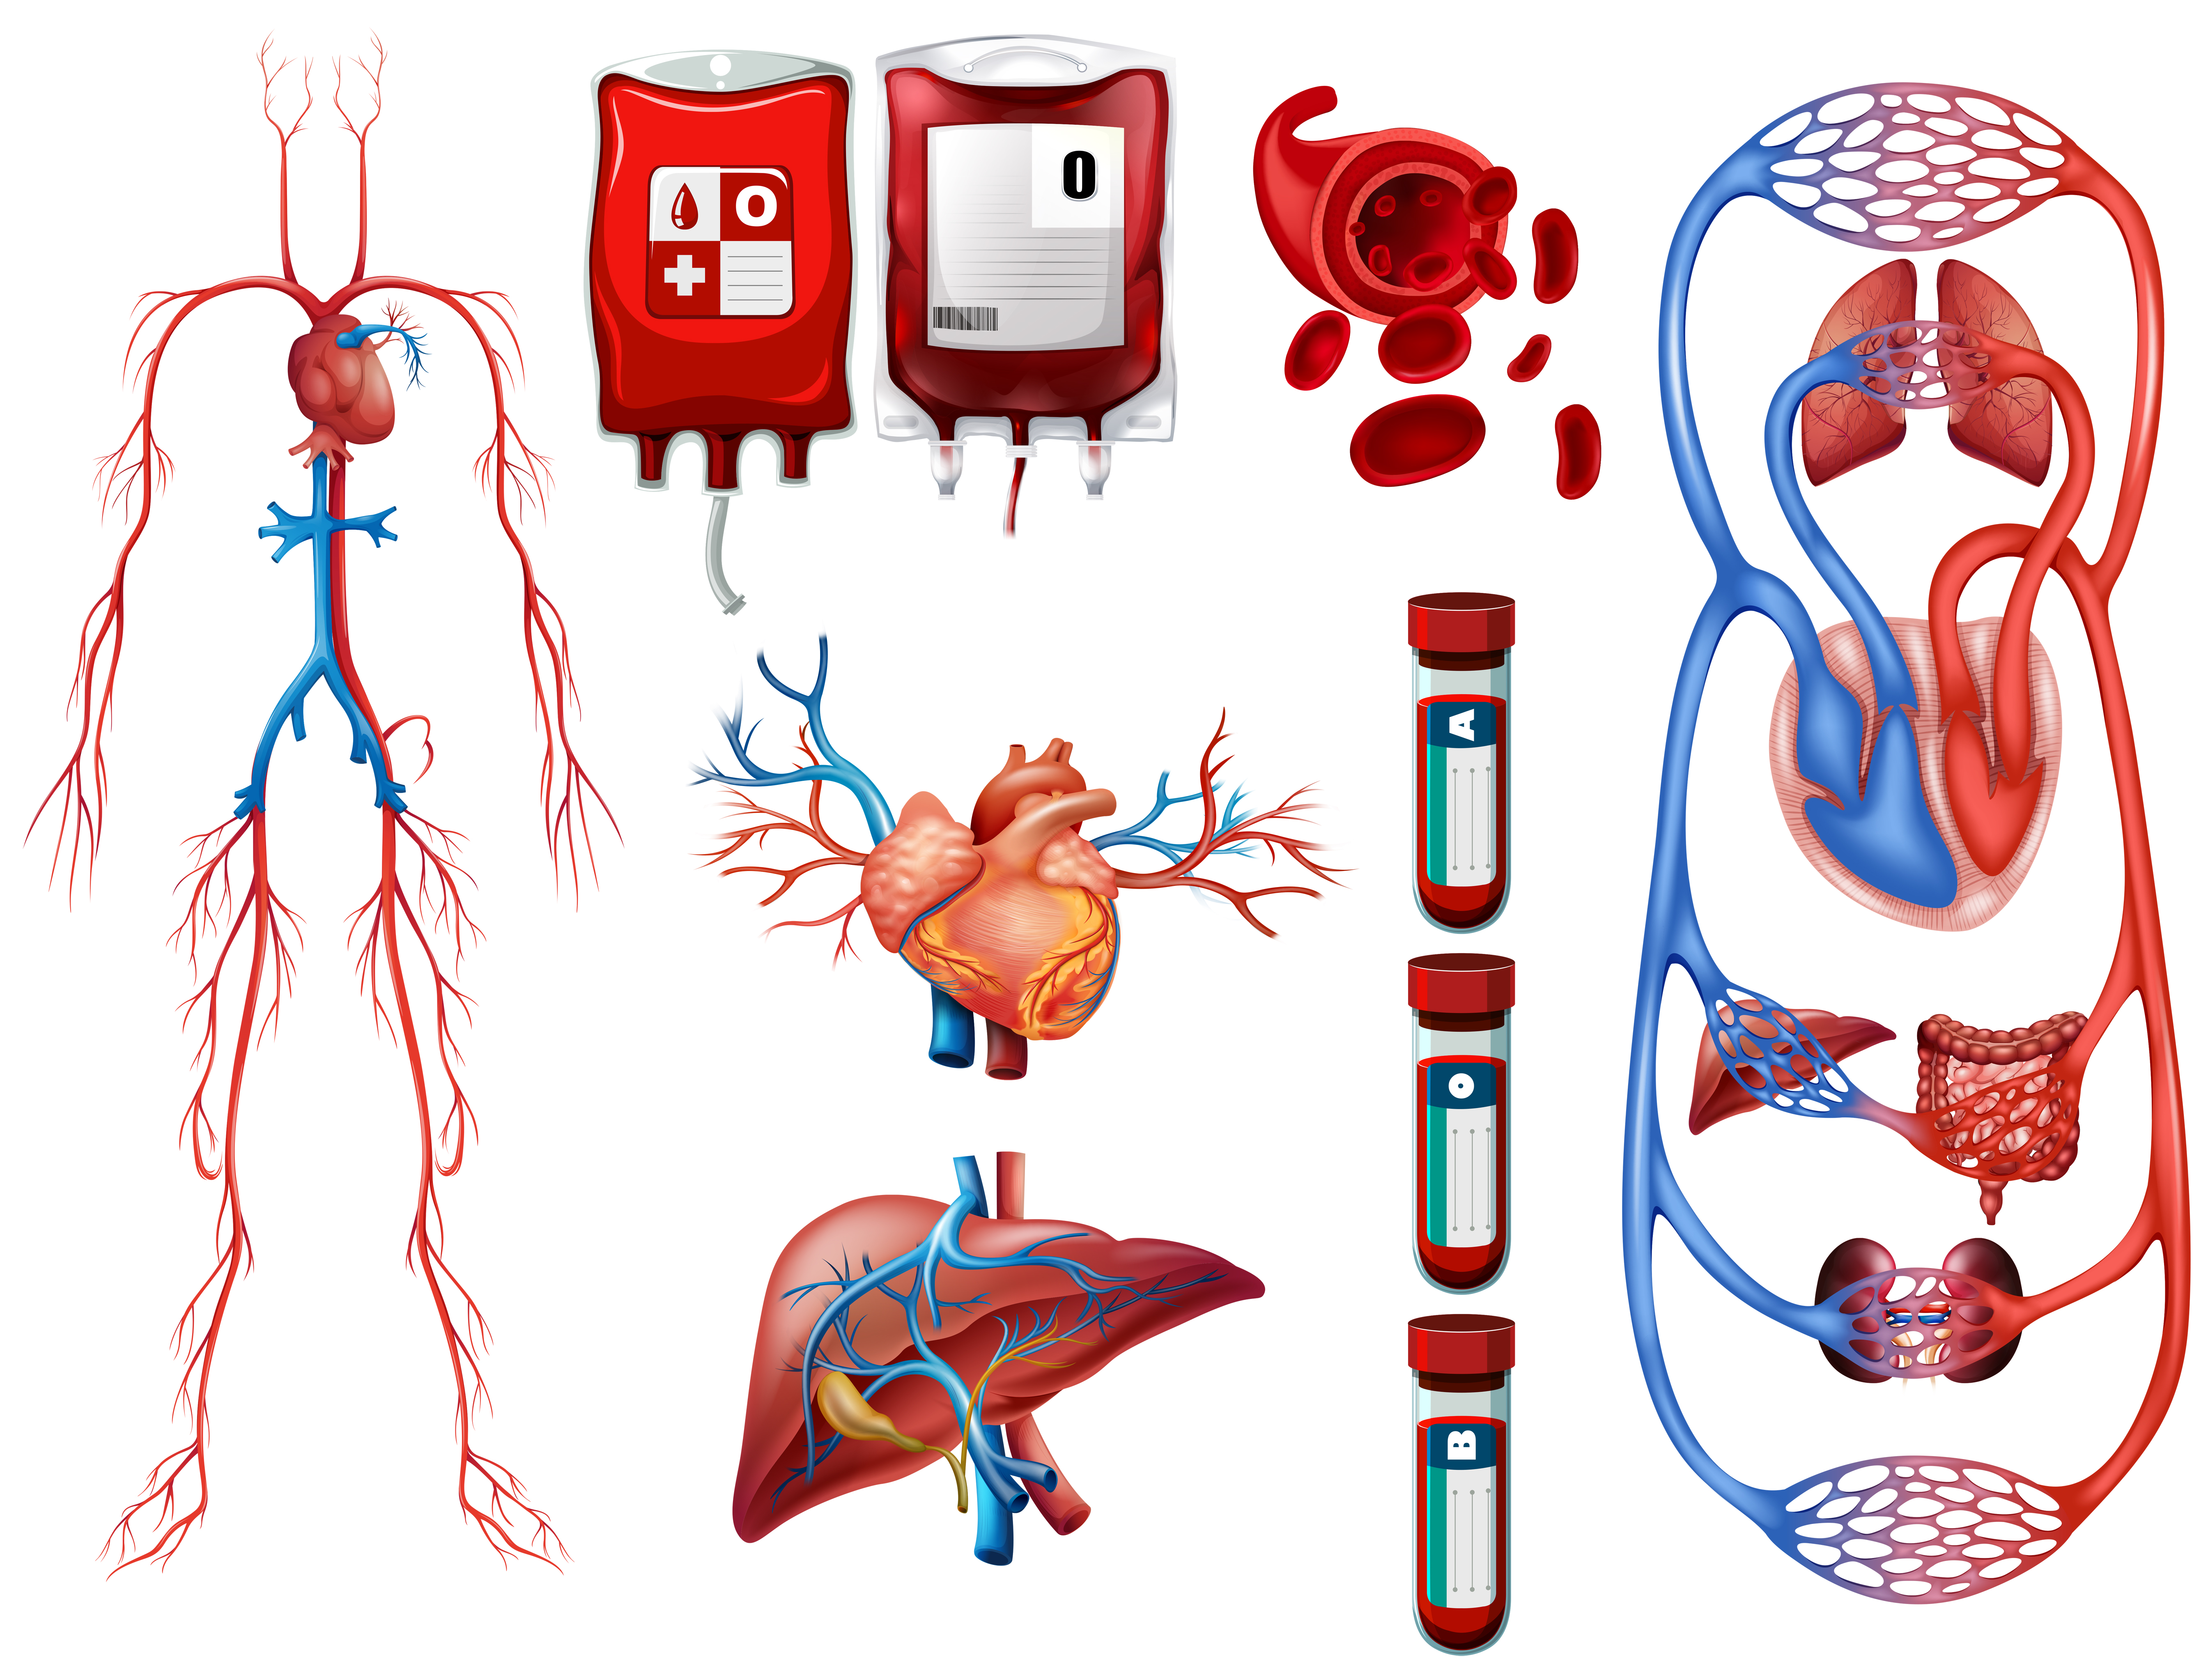 Здравоохранение - Сердечно-сосудистая система - Cardiovascular system - Кровеносная система - Circulatory system - Сердечно-сосудистые заболевания, ССЗ - Cardiovascular diseases - Ишемическая болезнь сердца - Morbus ischaemicus cordis